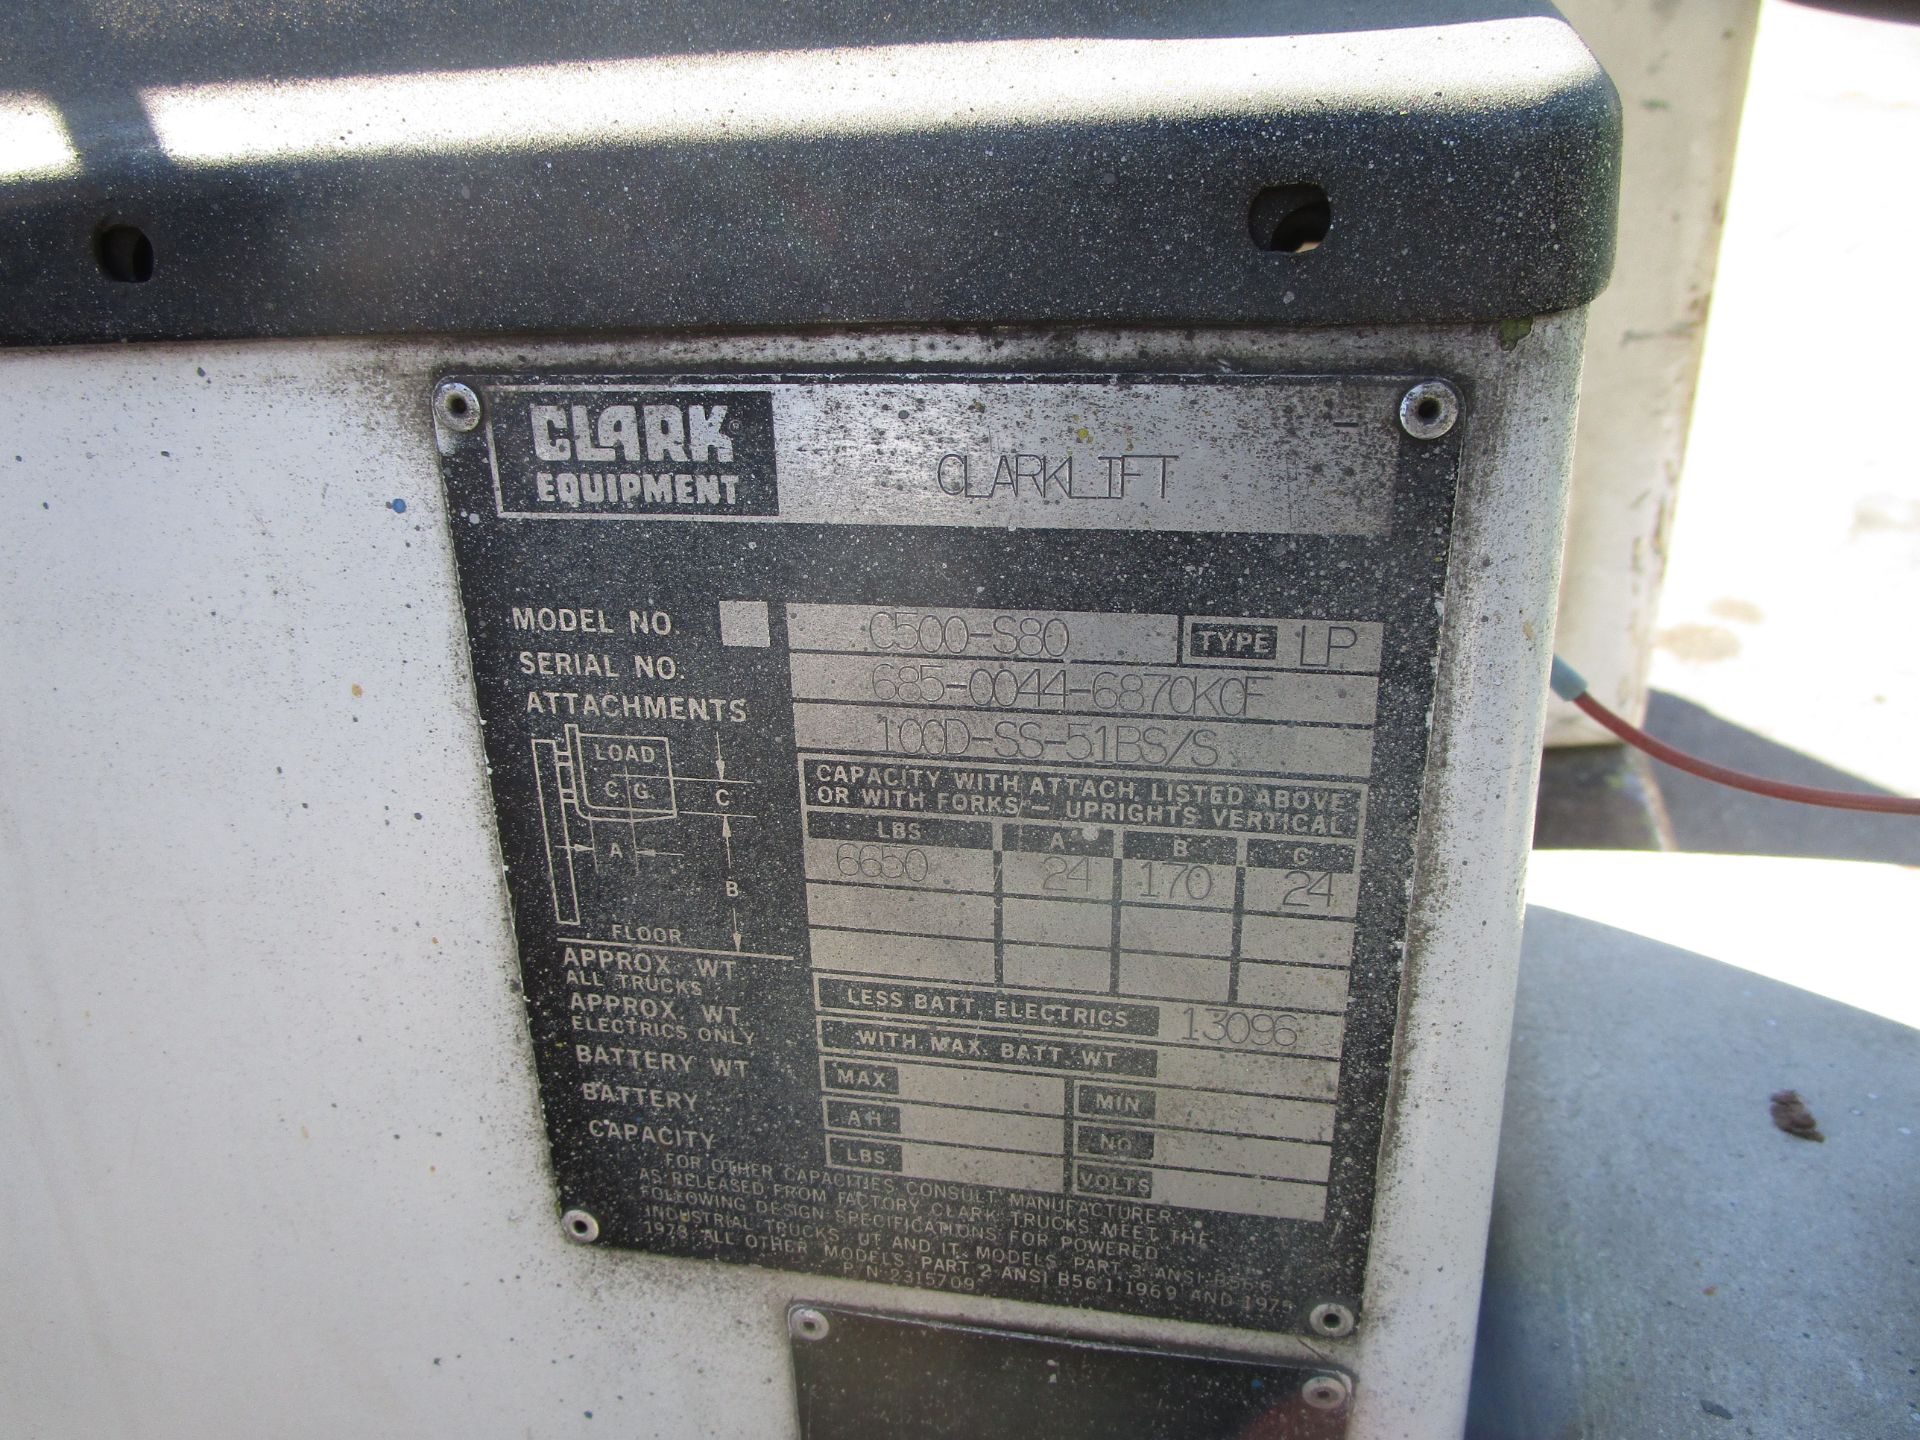 Clark C500-580 Forklift - Image 11 of 11